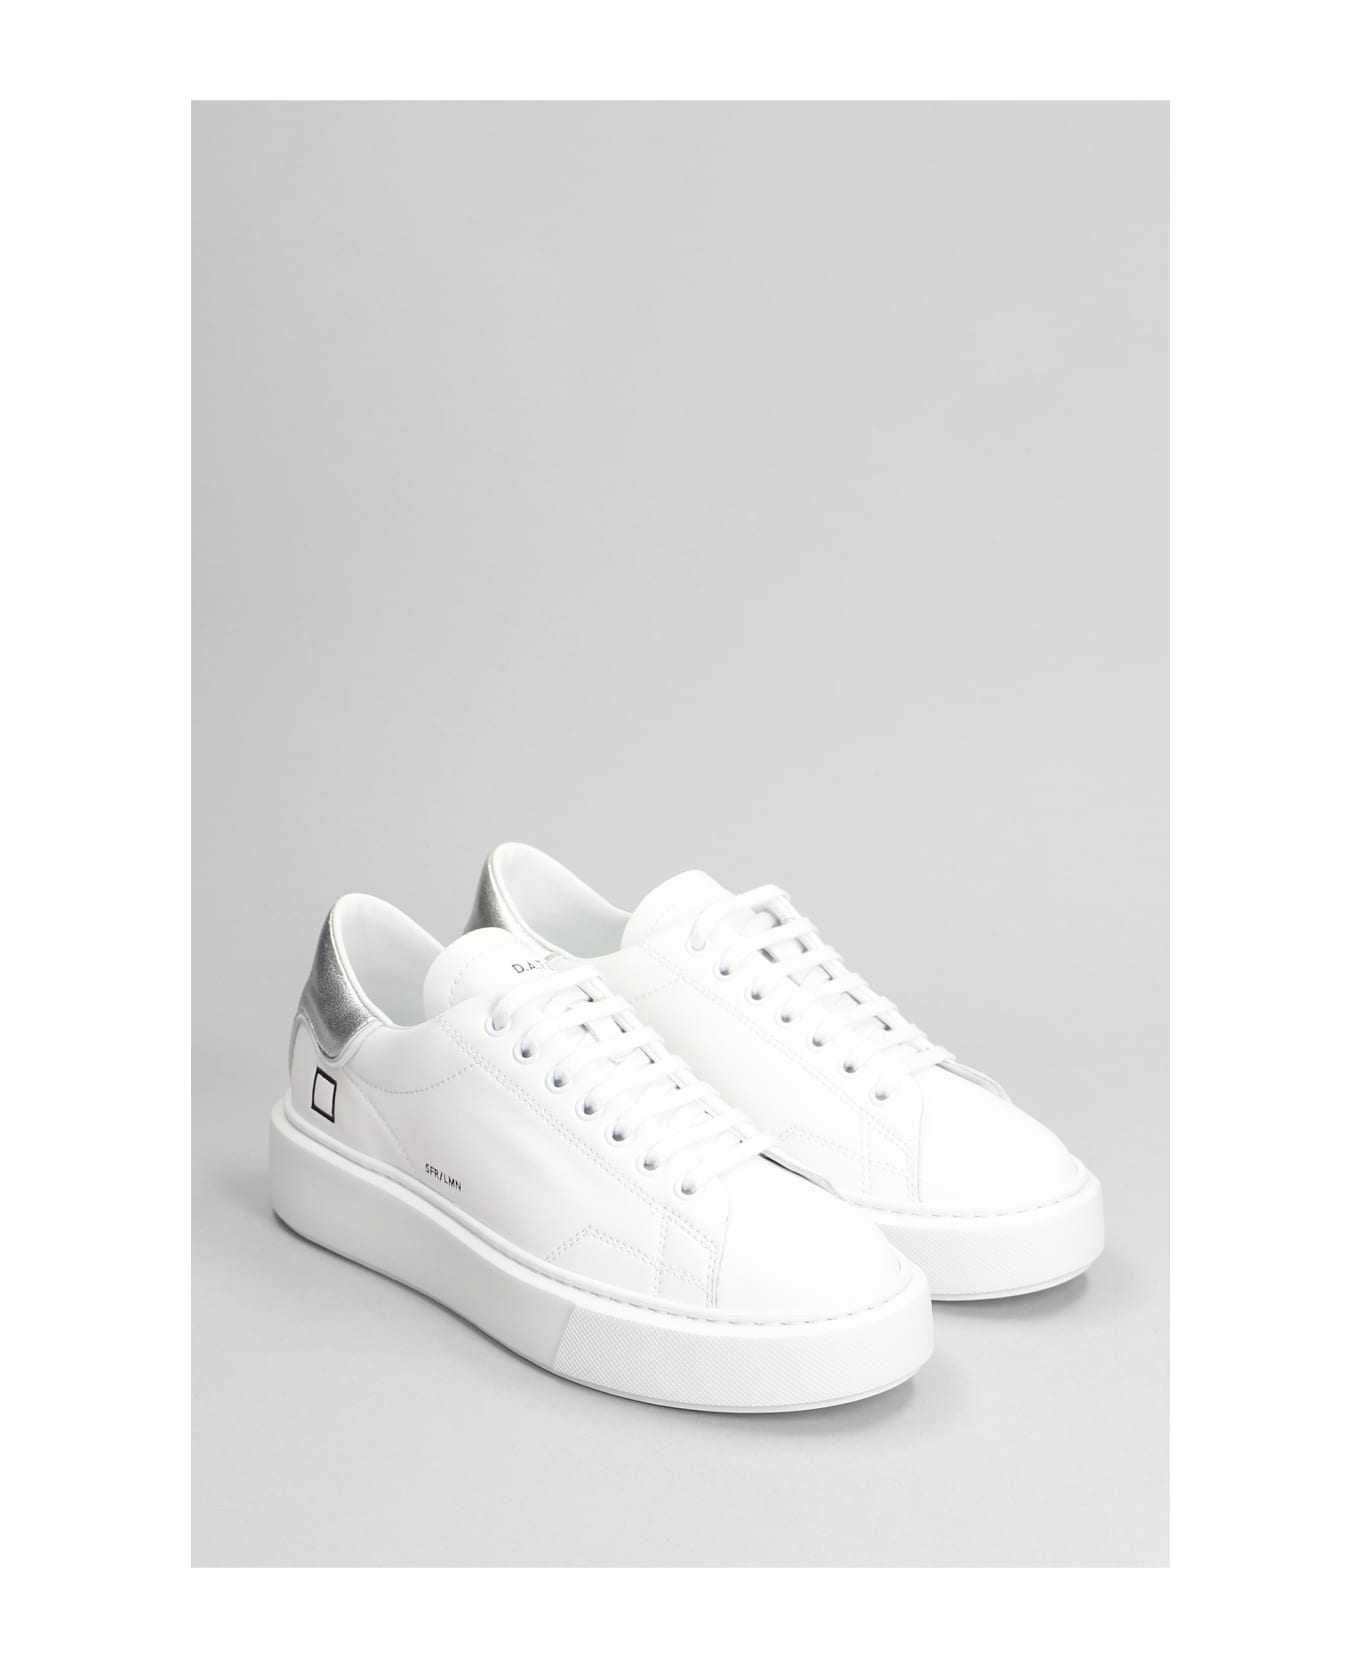 D.A.T.E. Sfera Sneakers In White Leather D.A.T.E. ウェッジシューズ